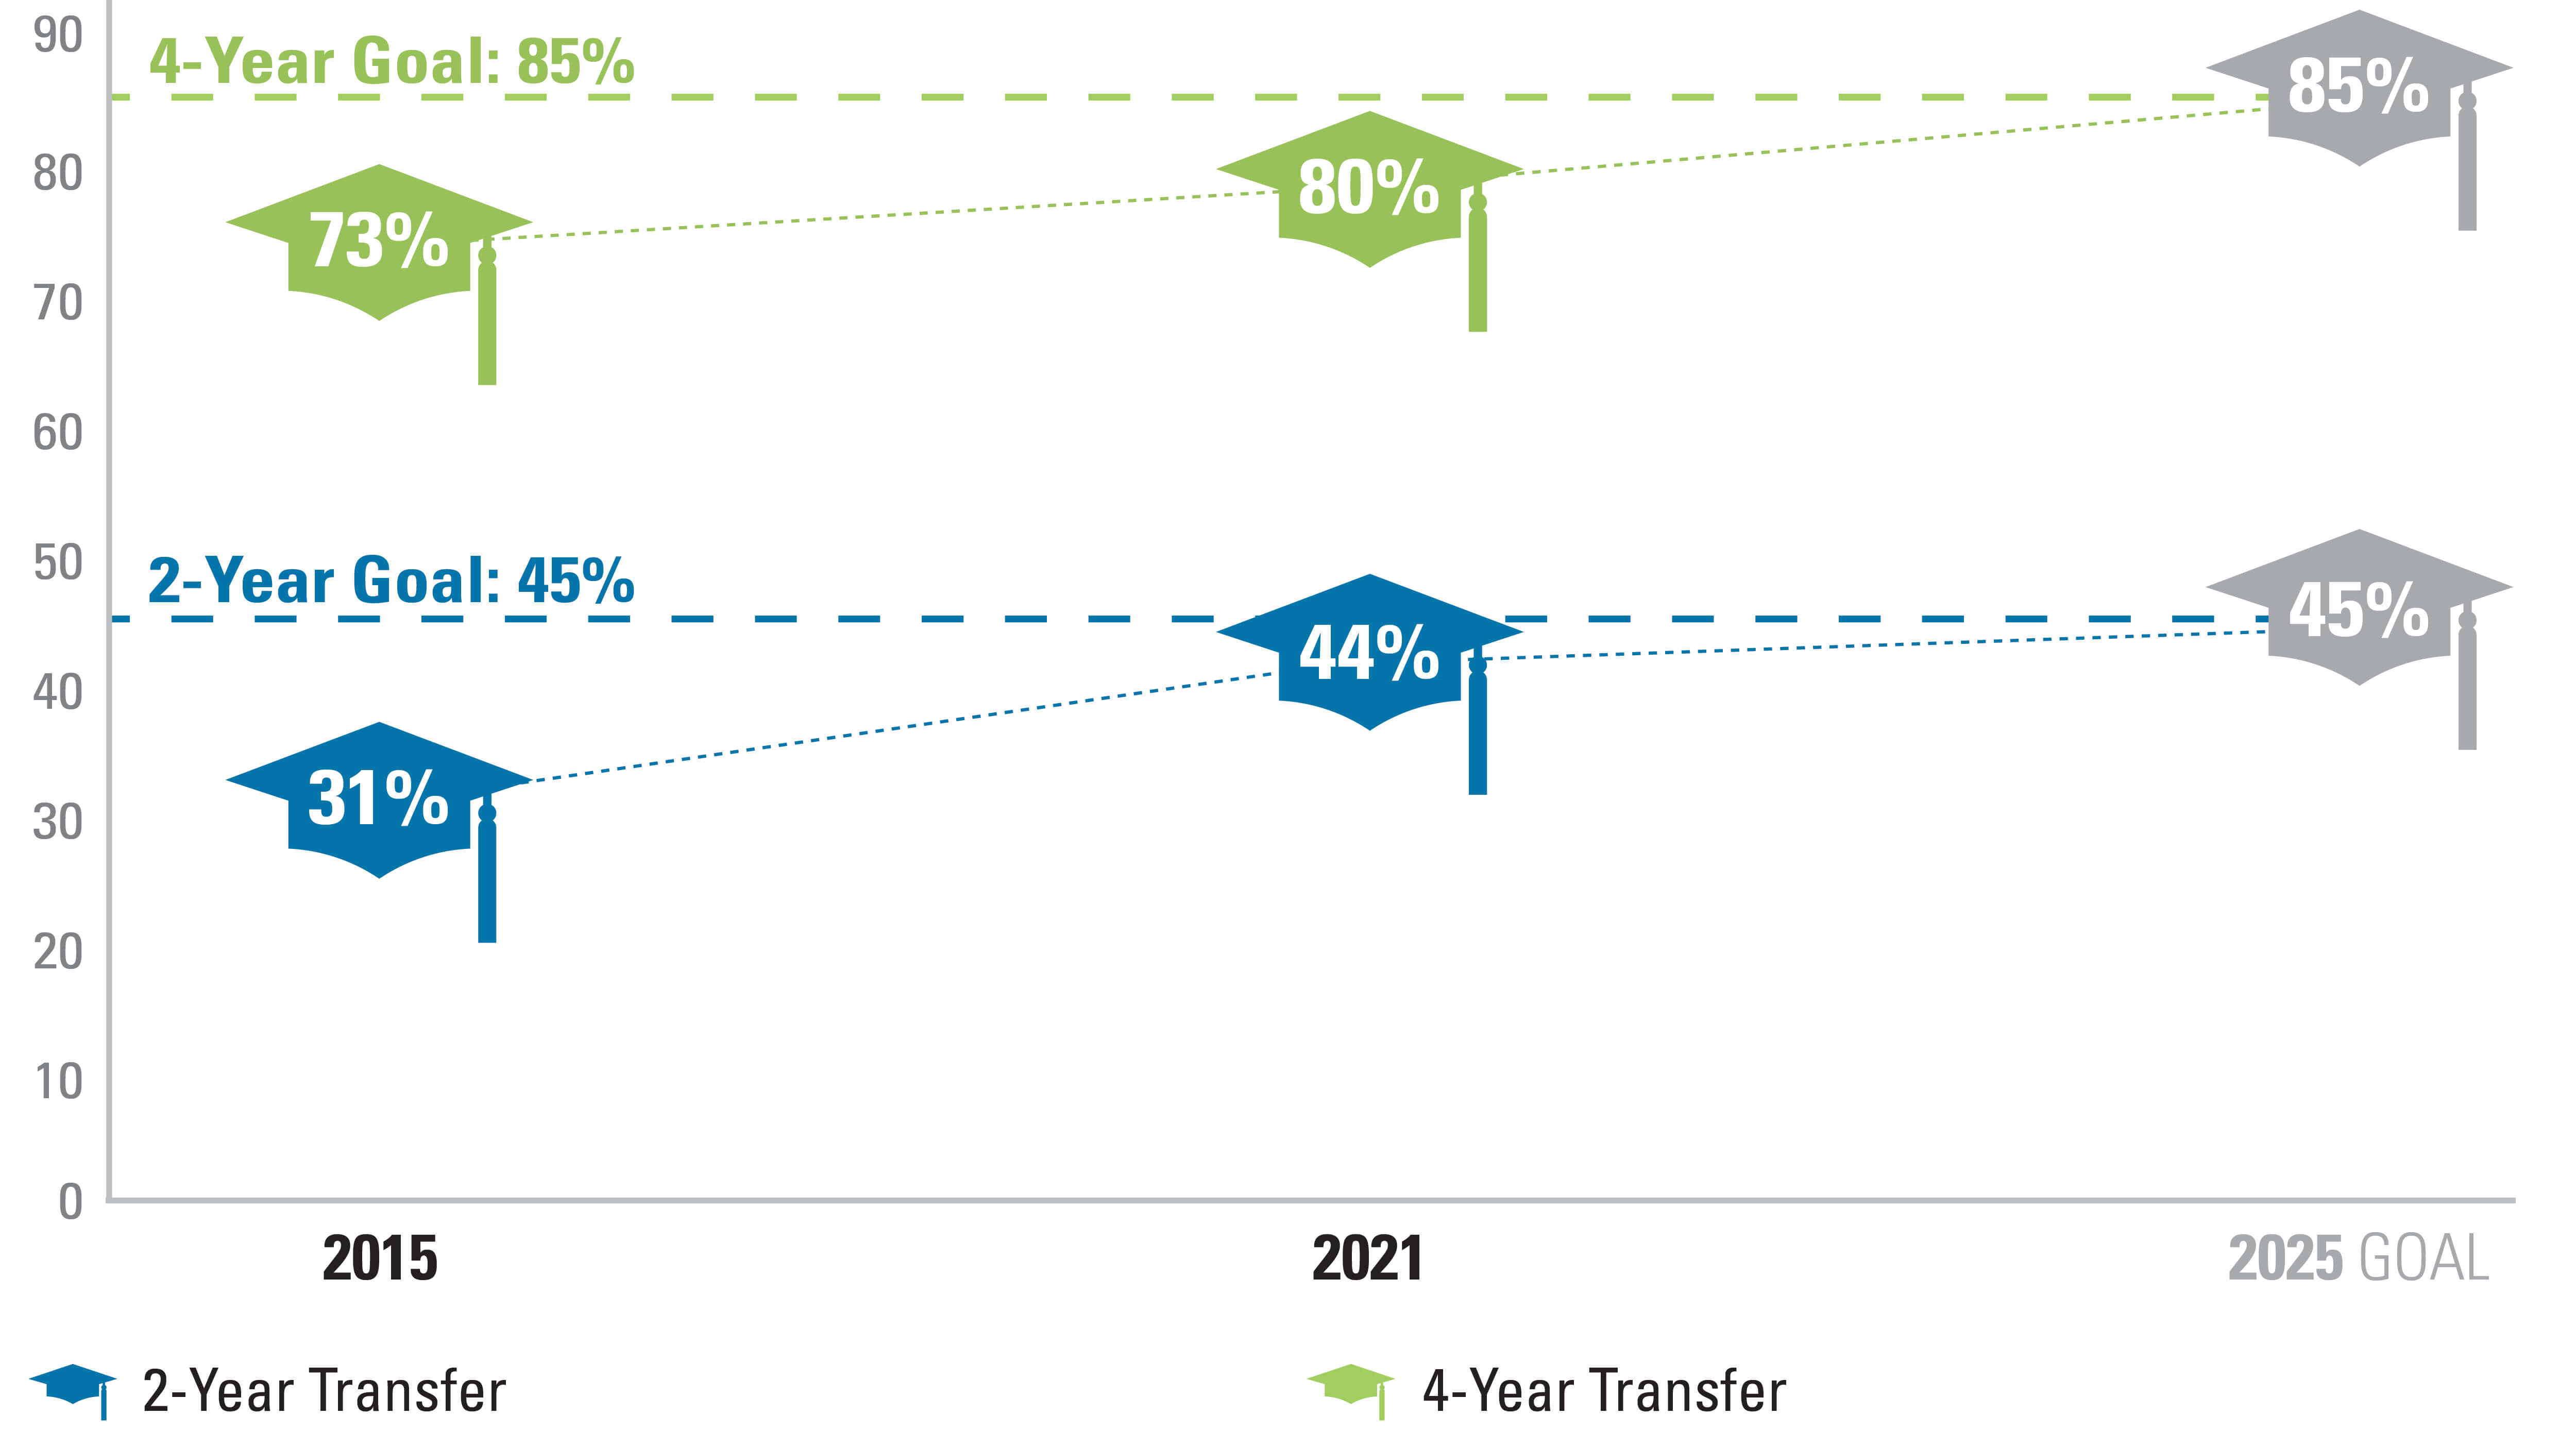 Transfer – 20212 year = 44% 4 year = 80